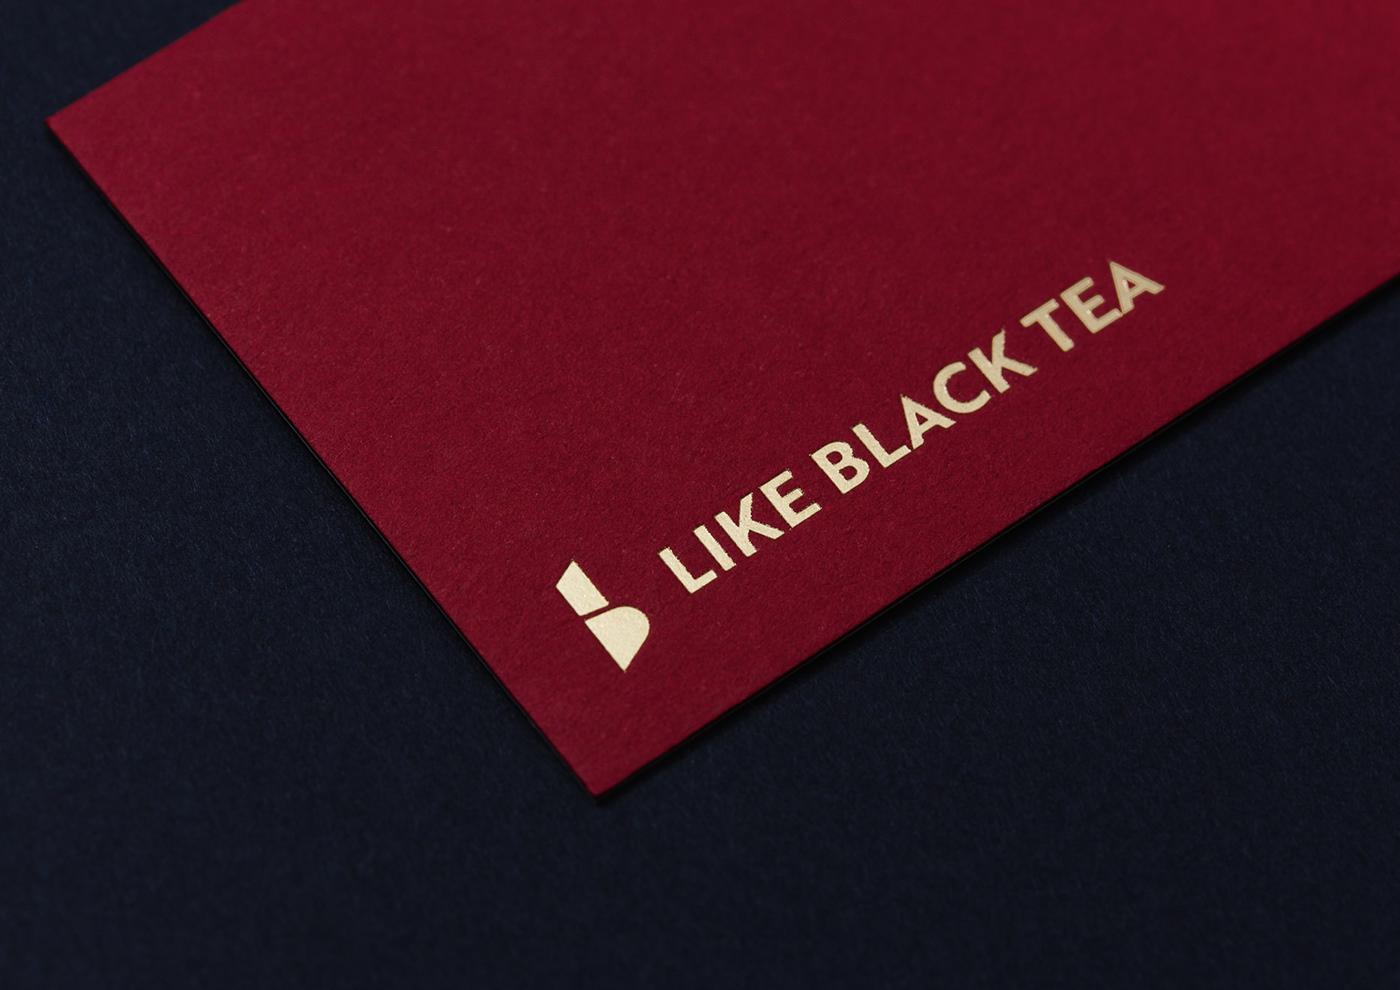 blacktea Classic drink red tea